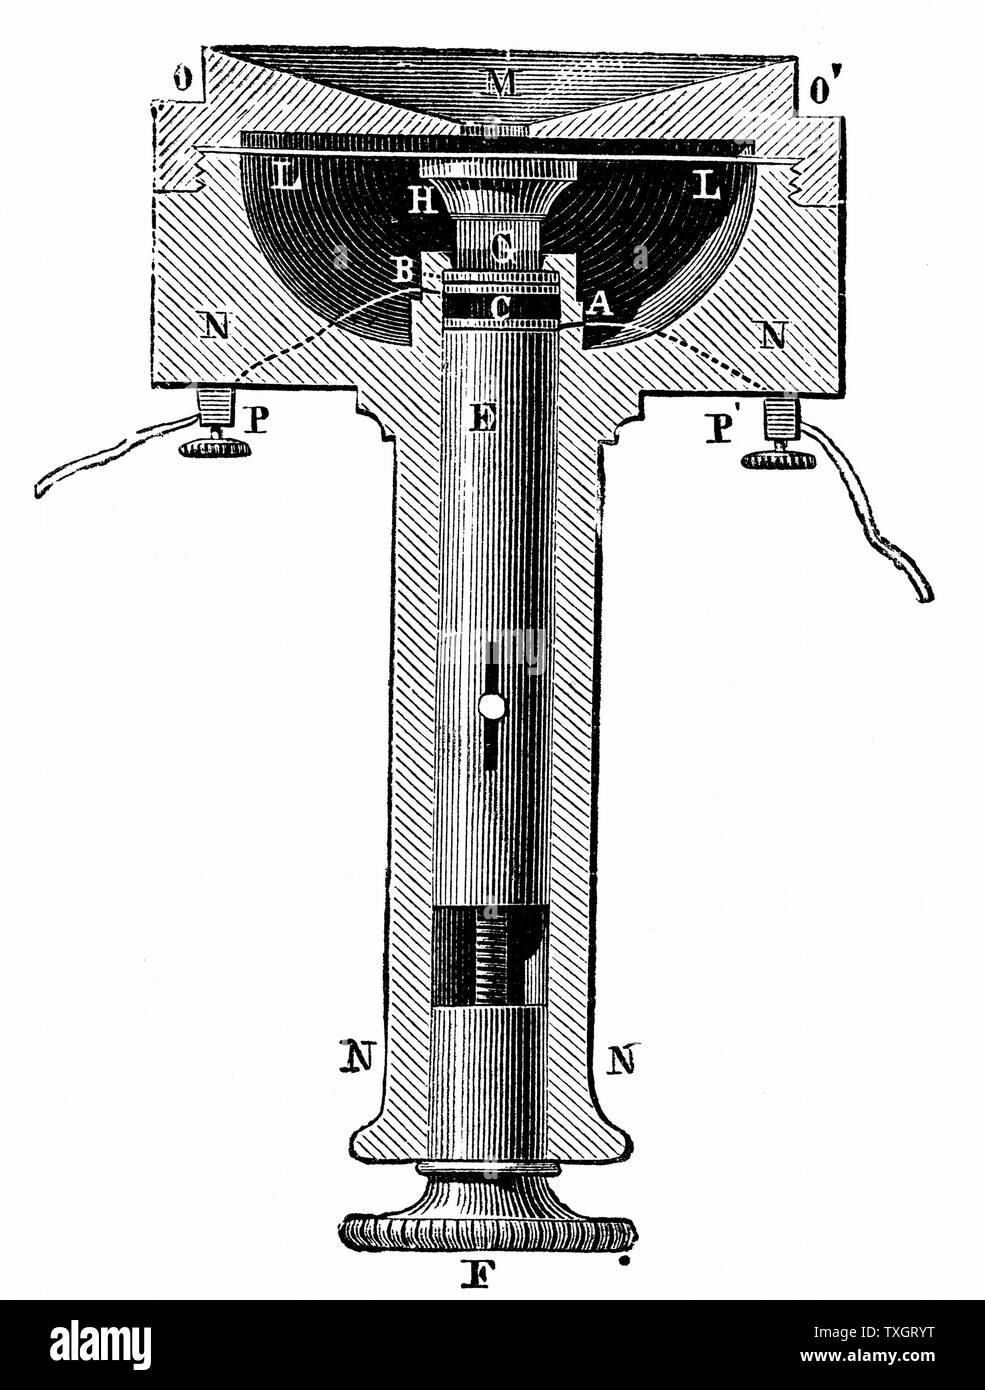 Appareil téléphonique réservée aux nouveaux abonnés de New York. C'est servi d'un émetteur d'Edison et d'un poney "couronne" (en bas à droite de l'image) c.1891 la gravure sur bois Banque D'Images